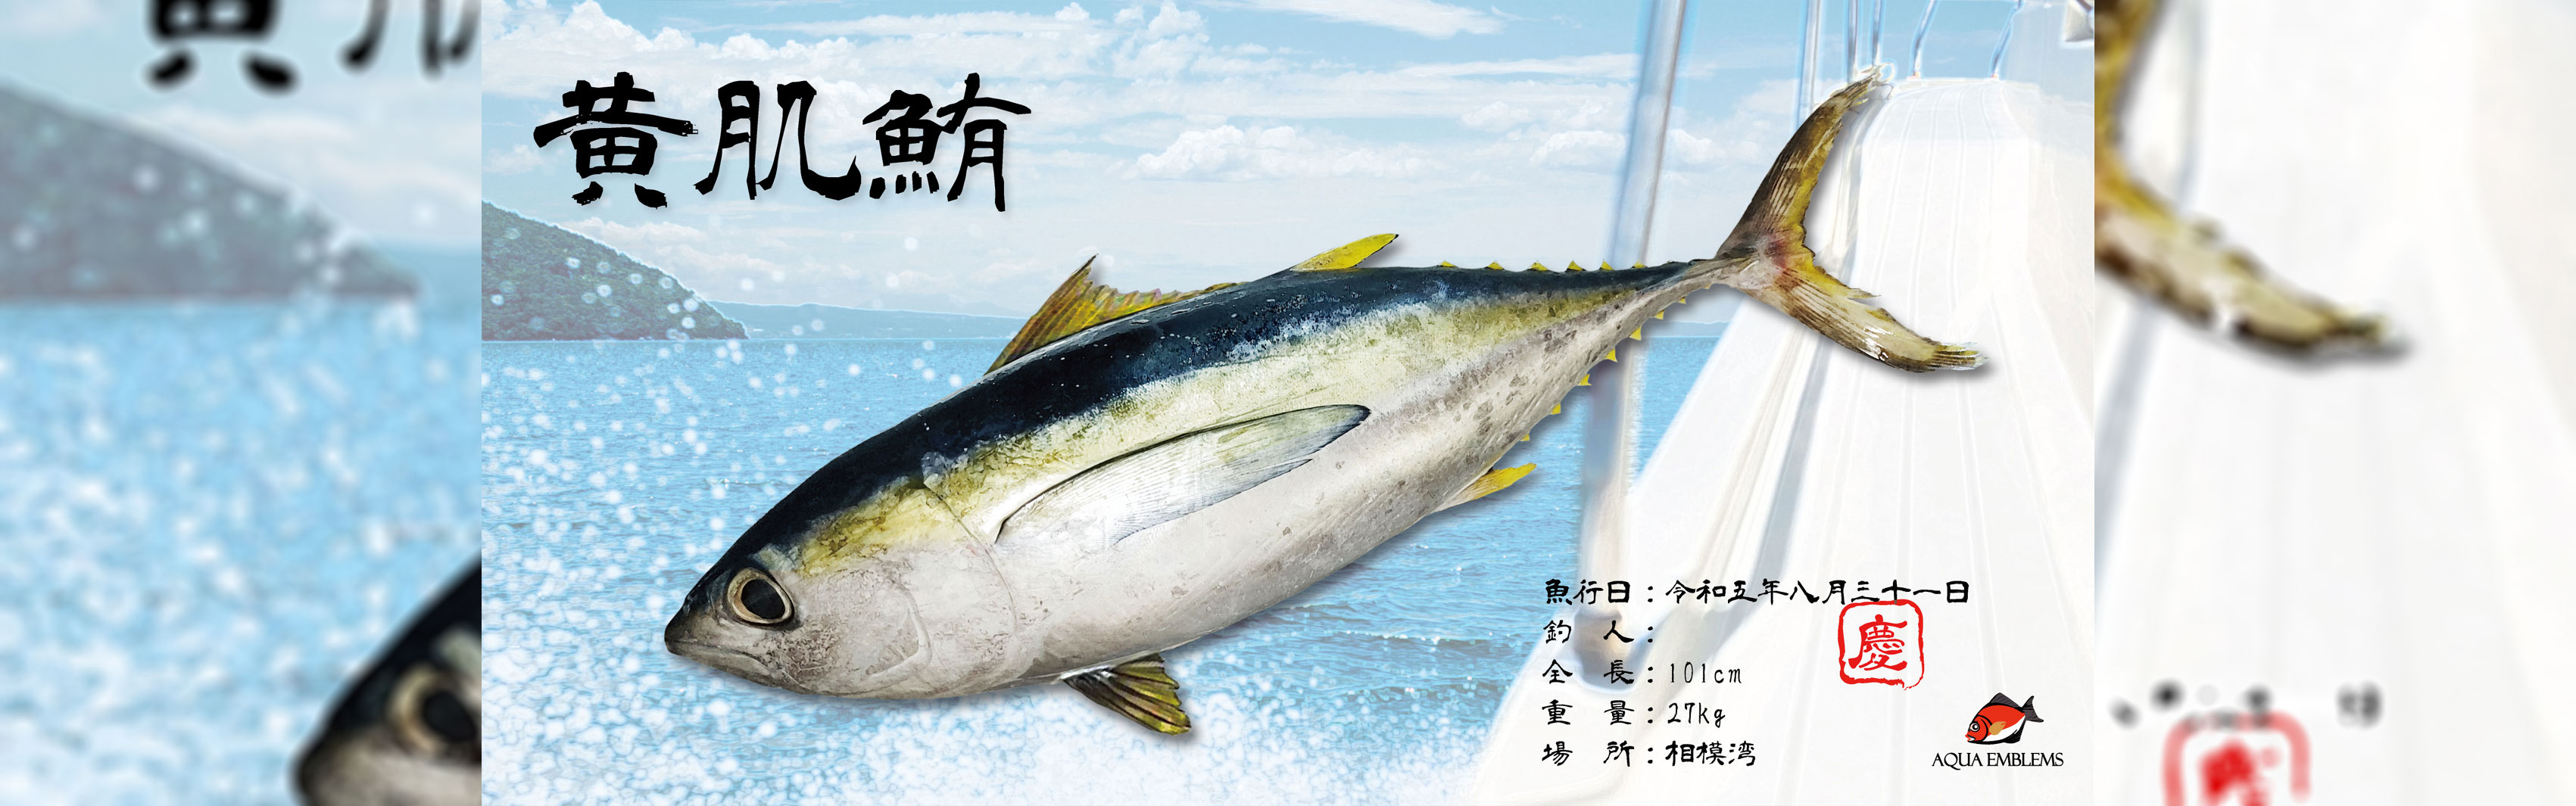 デジタル魚拓-キハダマグロ